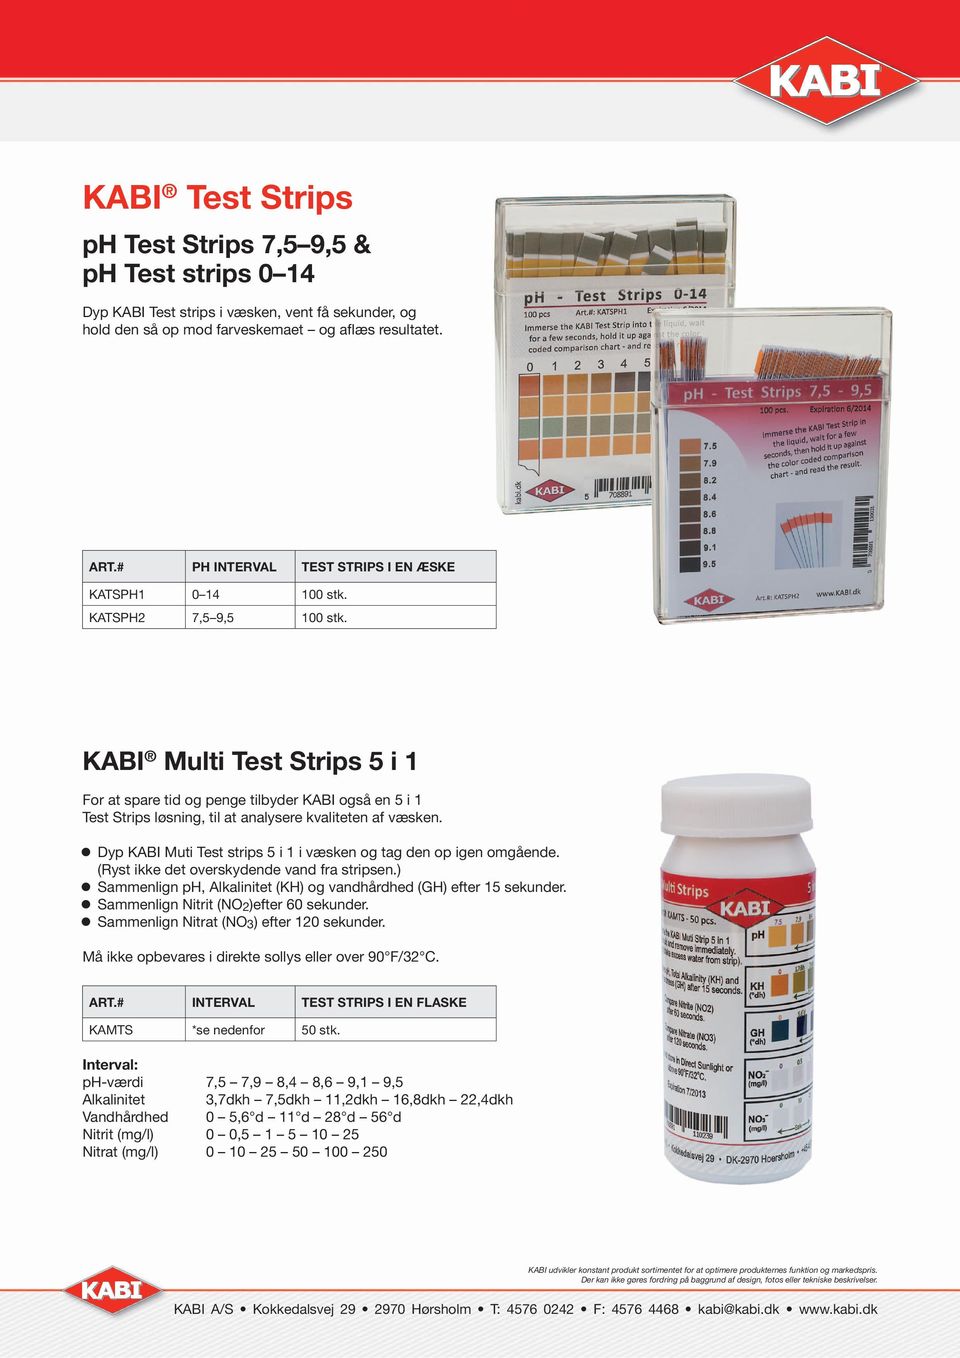 KABI Multi Test Strips 5 i 1 For at spare tid og penge tilbyder KABI også en 5 i 1 Test Strips løsning, til at analysere kvaliteten af væsken.